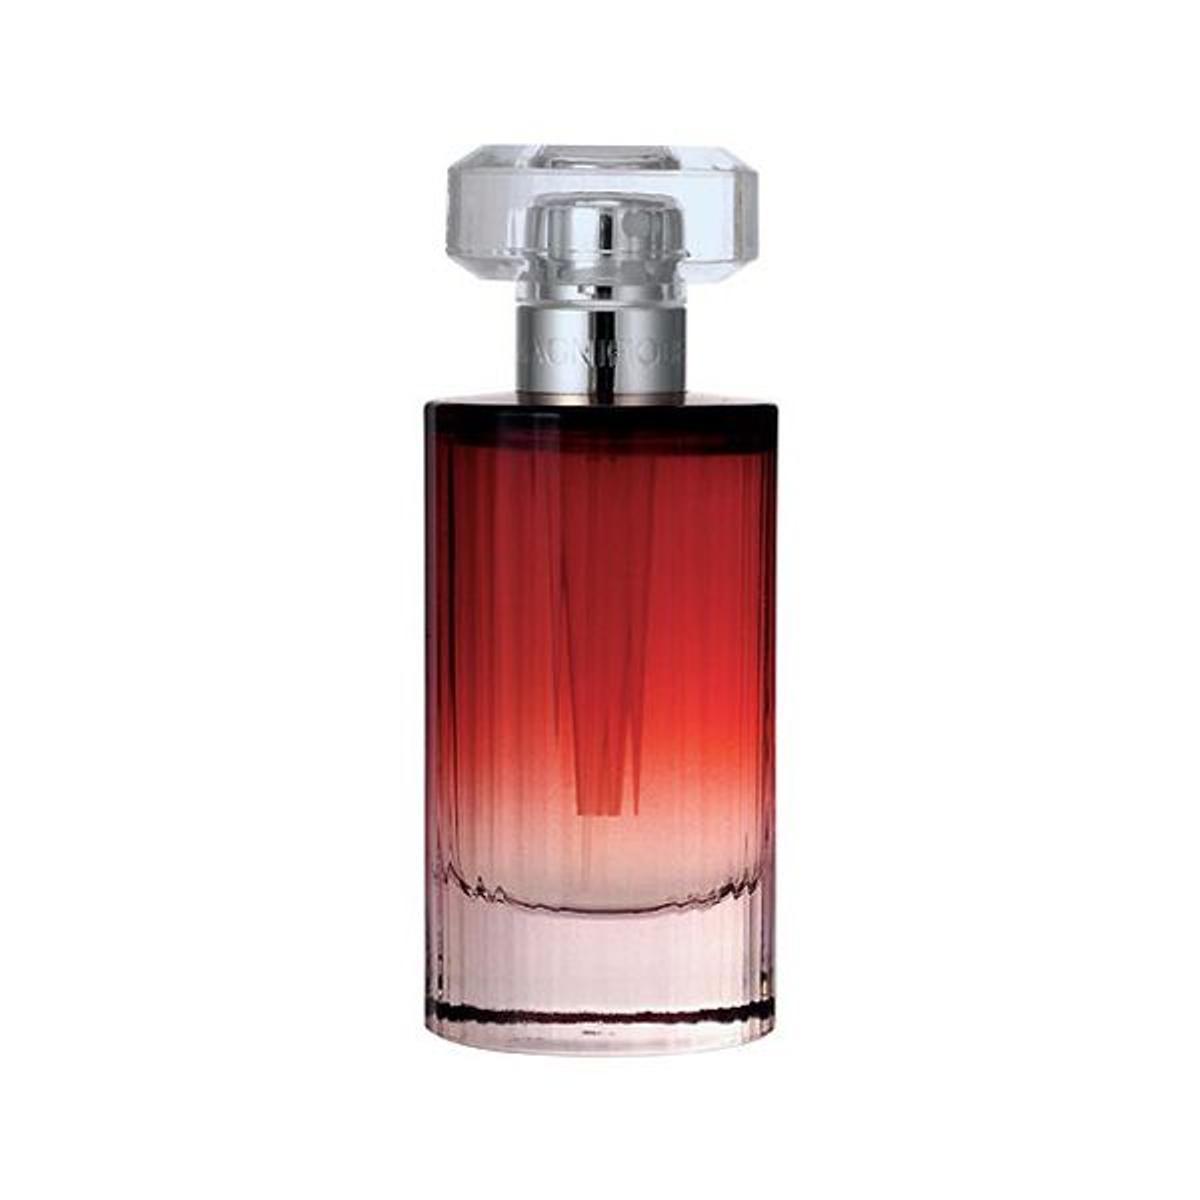 Lancôme interpreta el color rojo desde el frasco hasta la fragancia con Magnifique. 79 €.